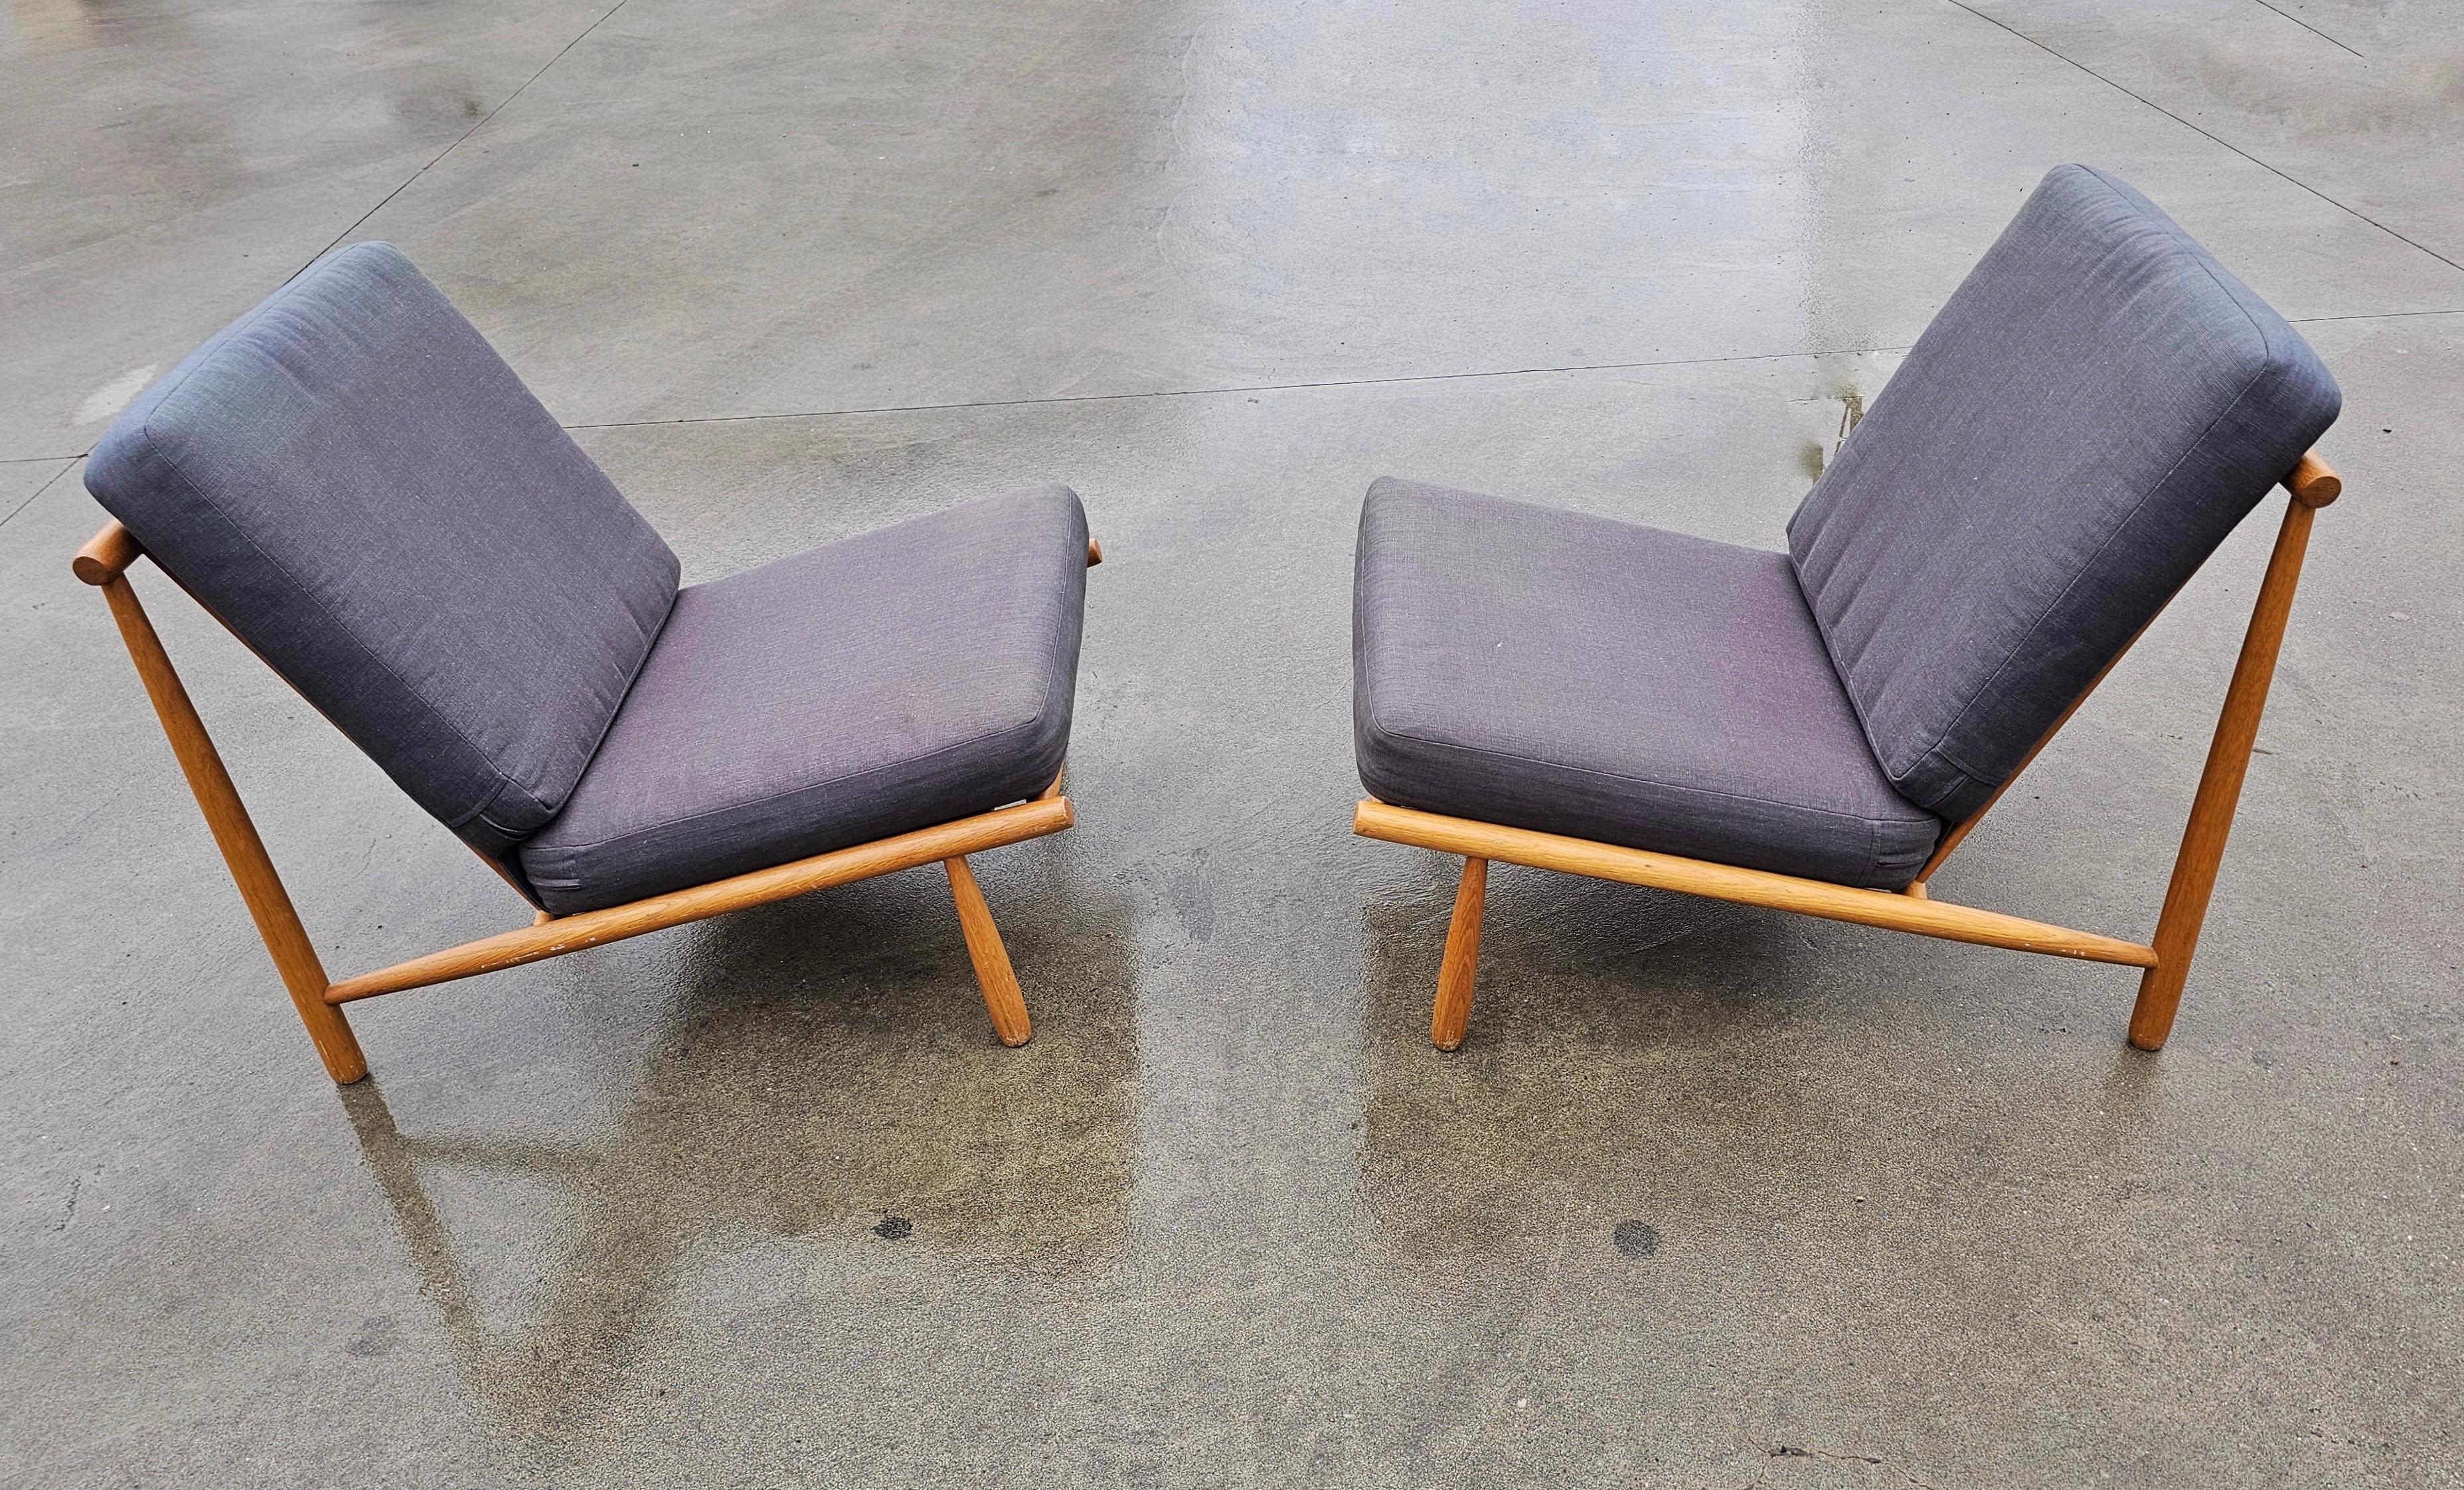 Bei diesem Angebot handelt es sich um ein seltenes Paar Mid Century Modern Lounge Chairs Modell 'Domus'. Sie wurden von Alf Svensson für Dux of Sweden entworfen. Mit elegantem Design, aus Buche, mit dunkelgrauen Kissen. Hergestellt in Schweden in